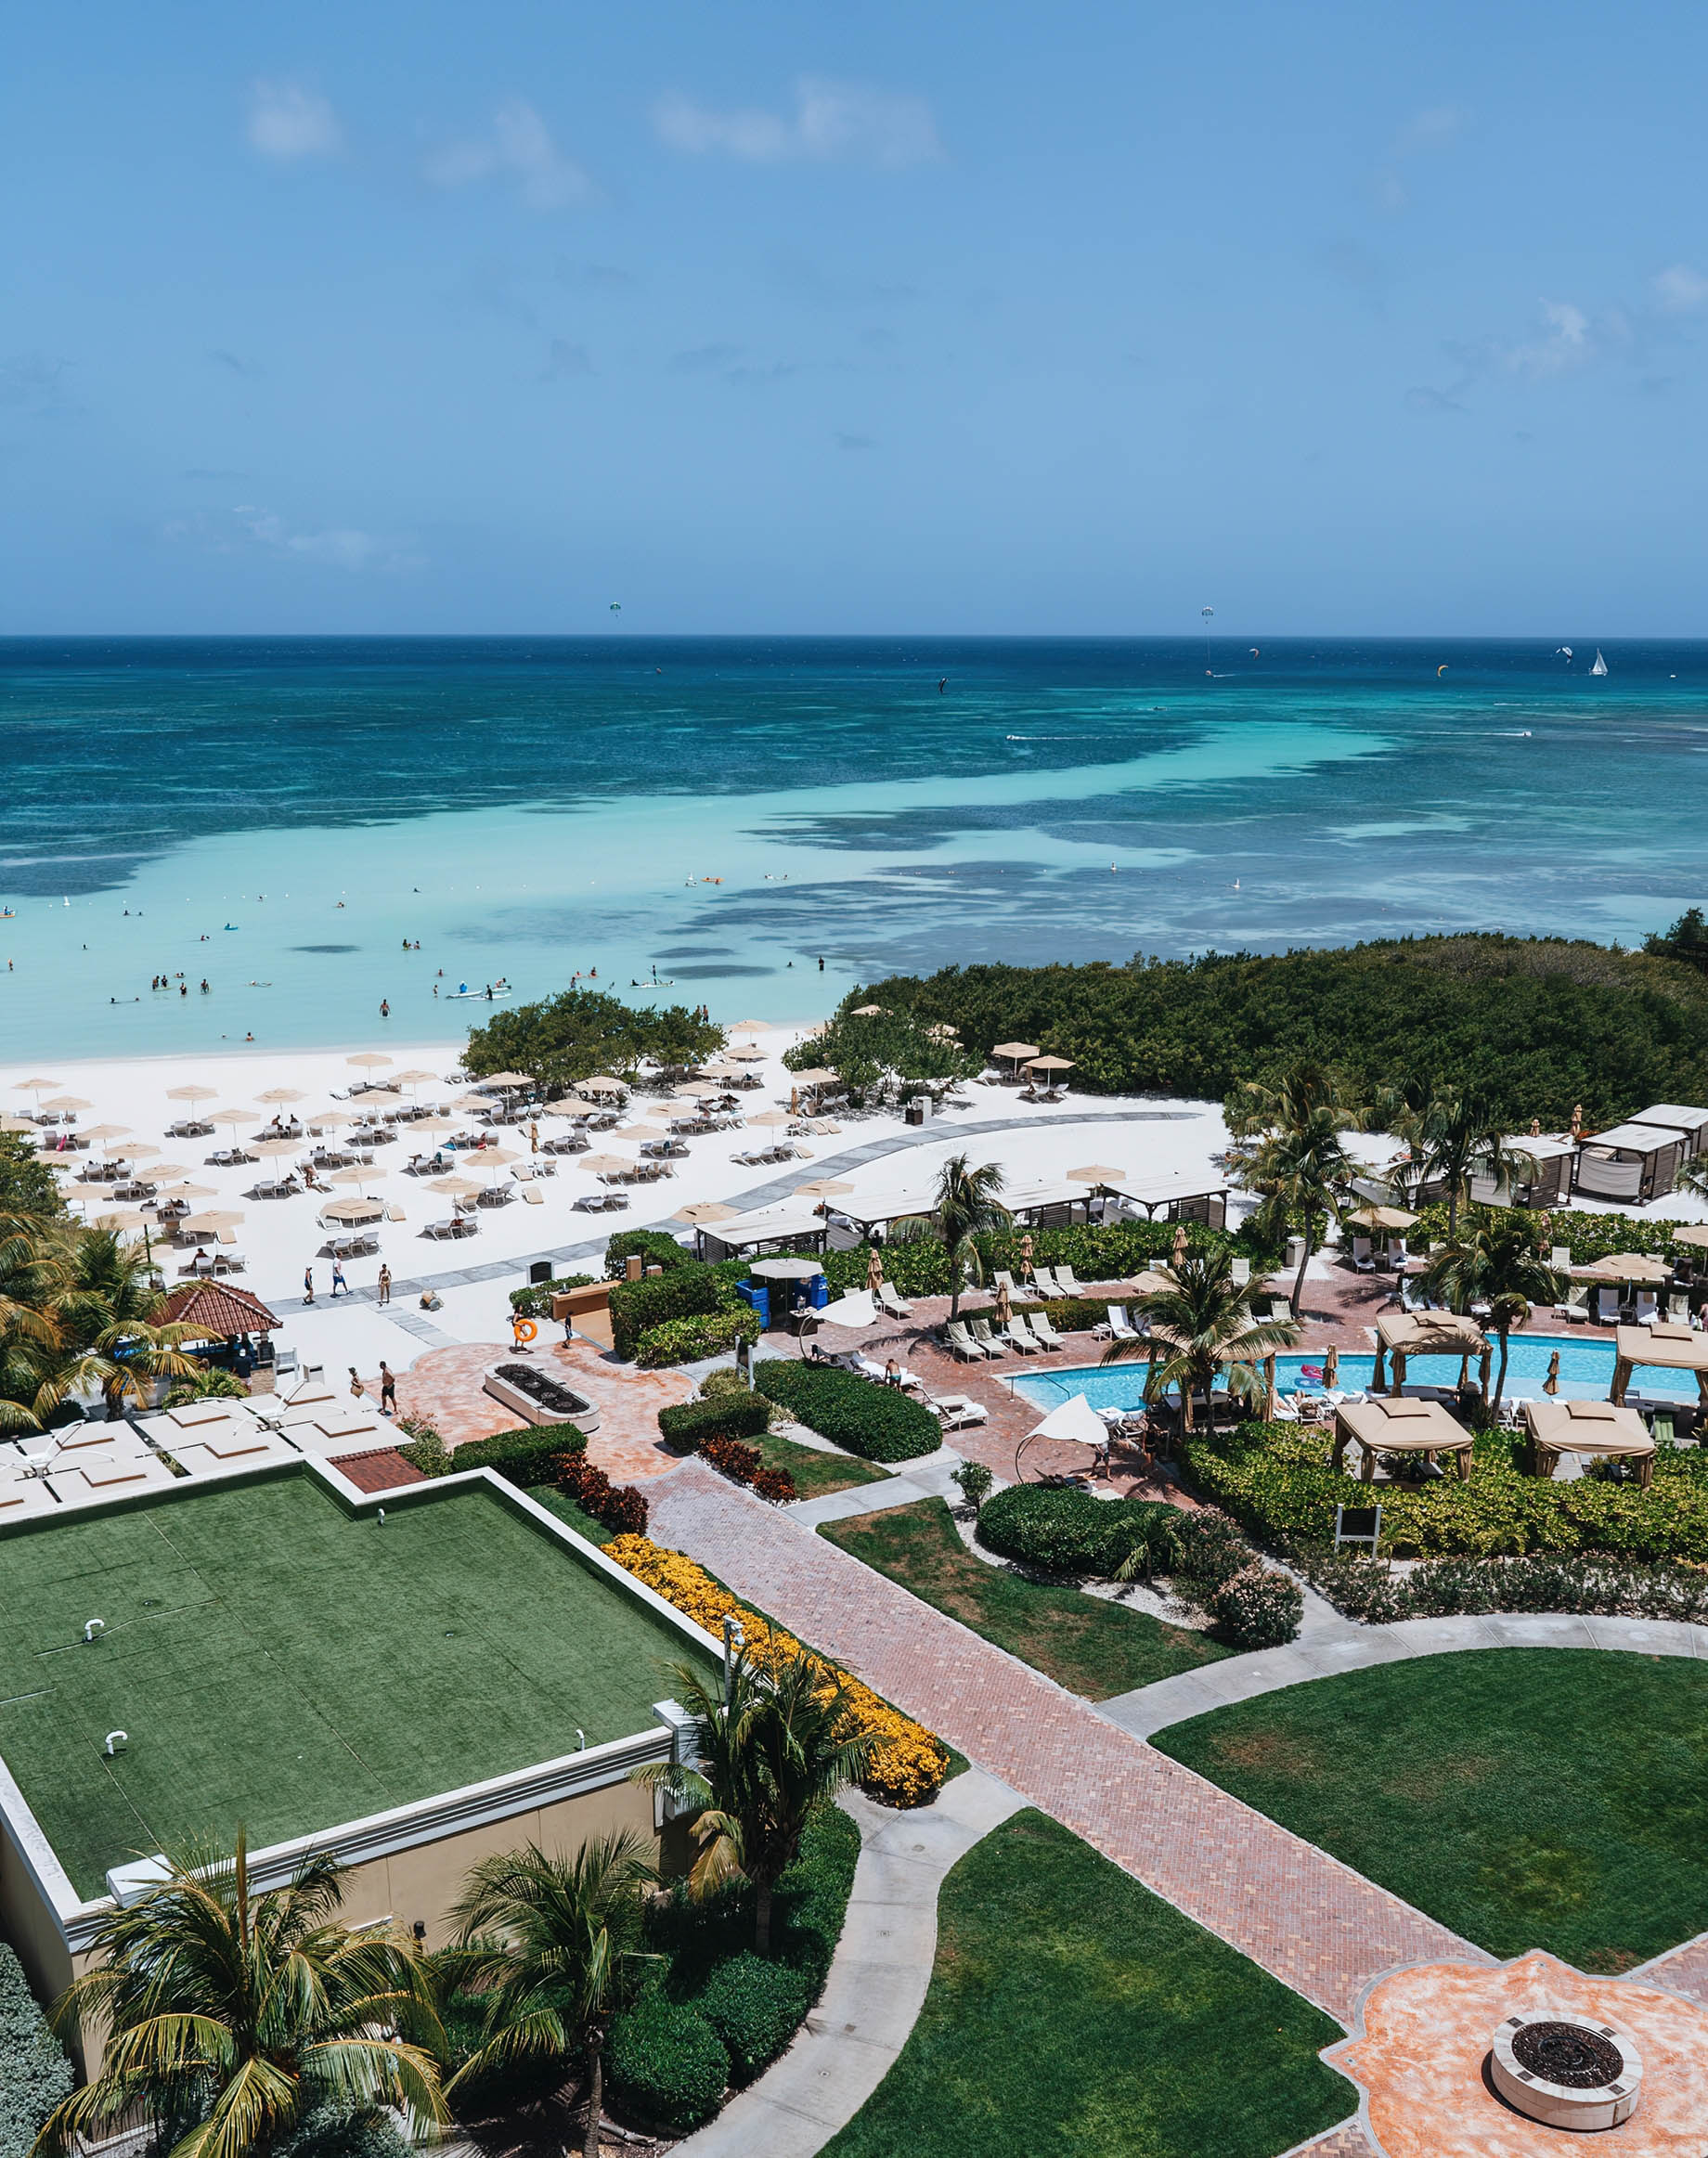 The Ritz-Carlton, Aruba Resort - Palm Beach, Aruba - Beach and Ocean Aerial View